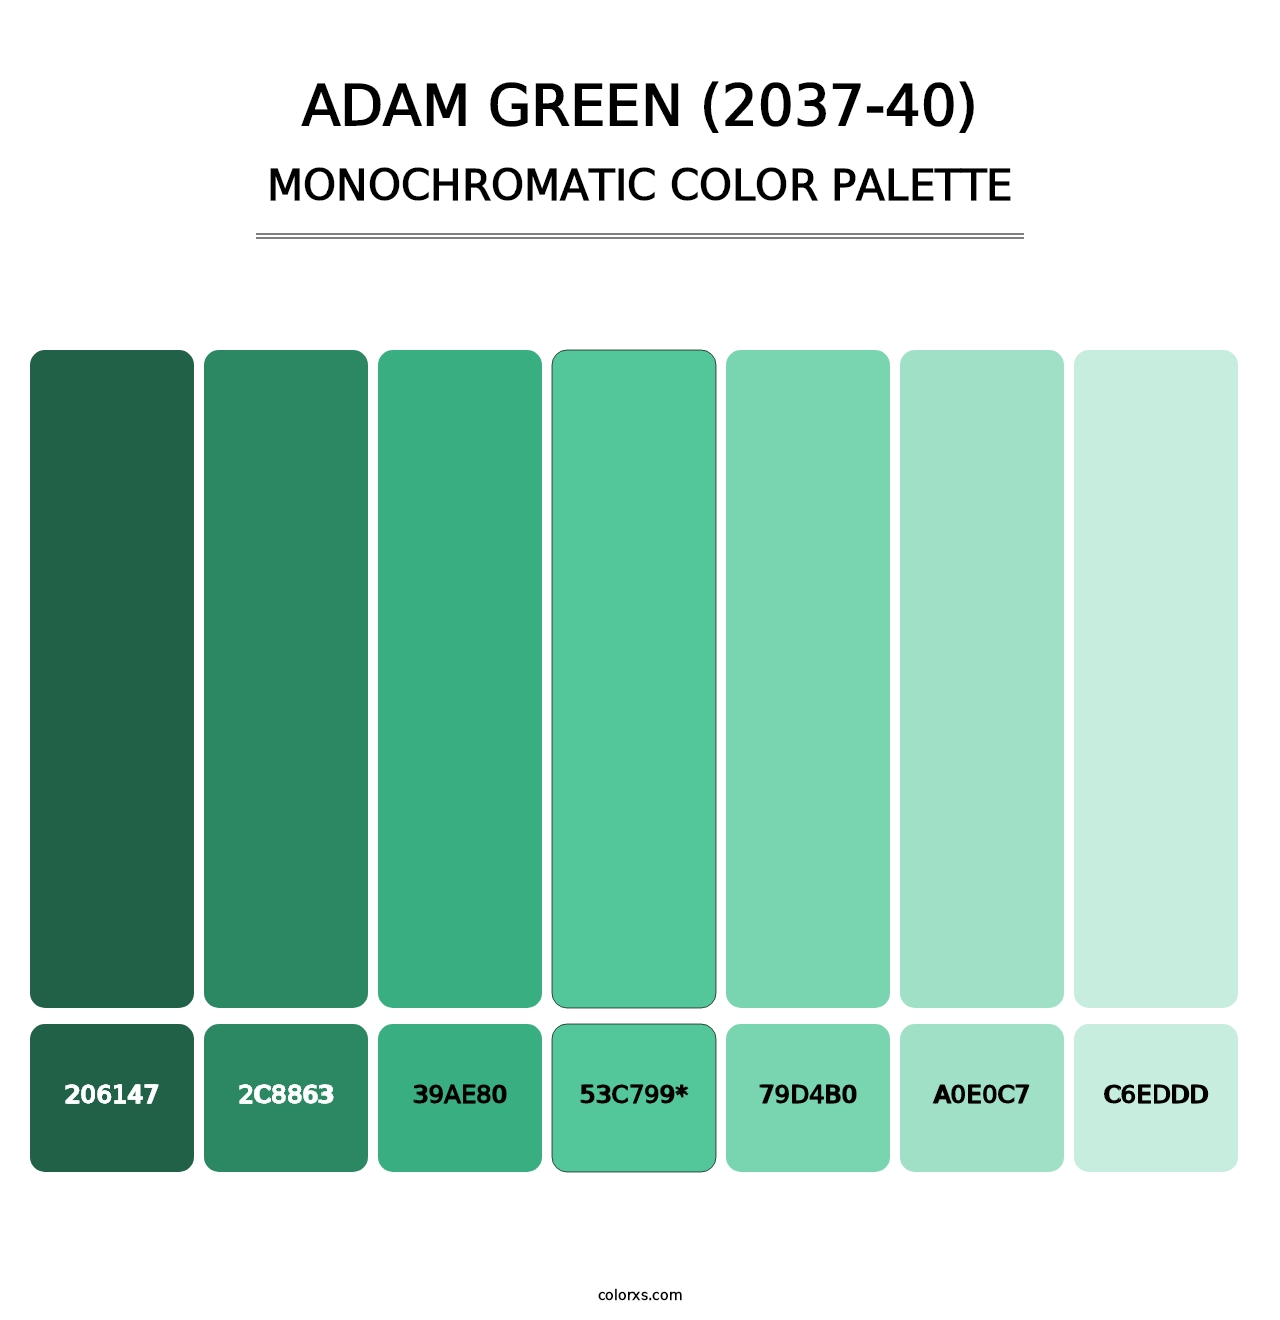 Adam Green (2037-40) - Monochromatic Color Palette